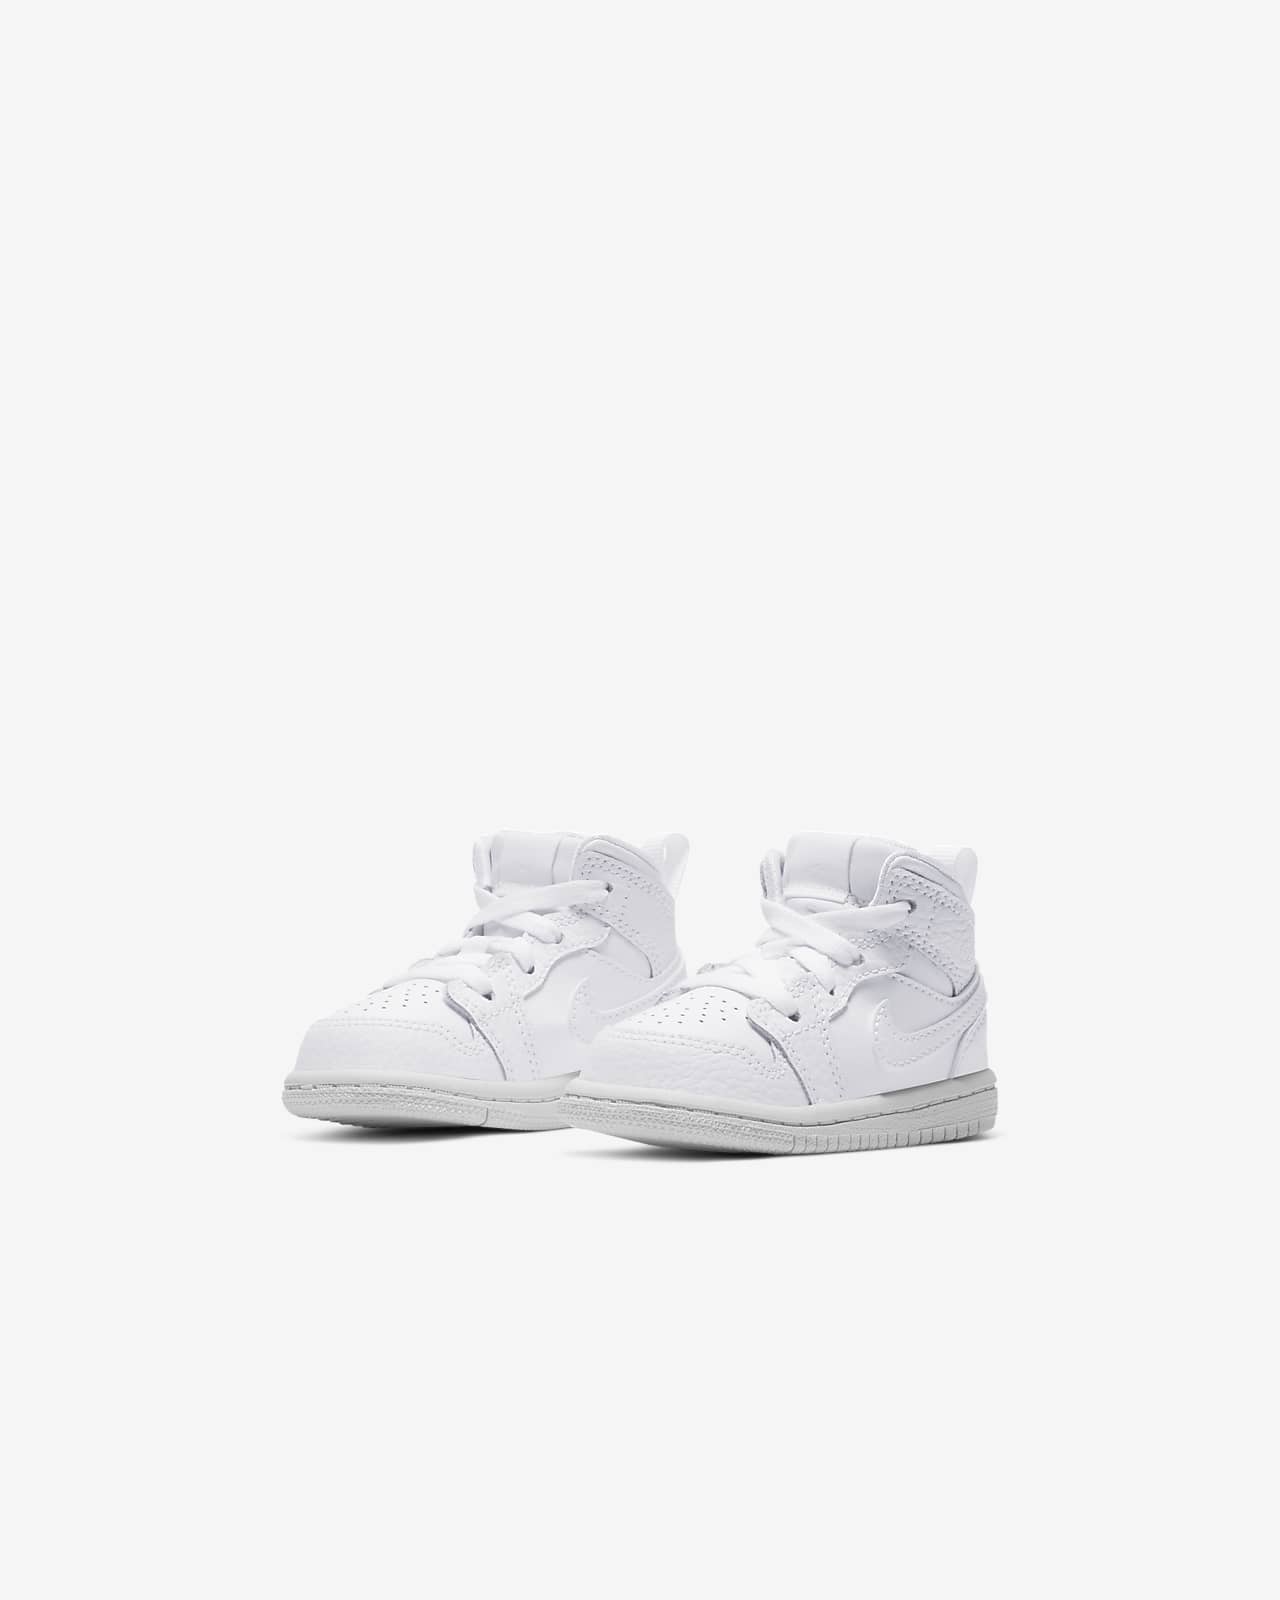 Jordan 1 Mid Baby and Toddler Shoe. Nike HR